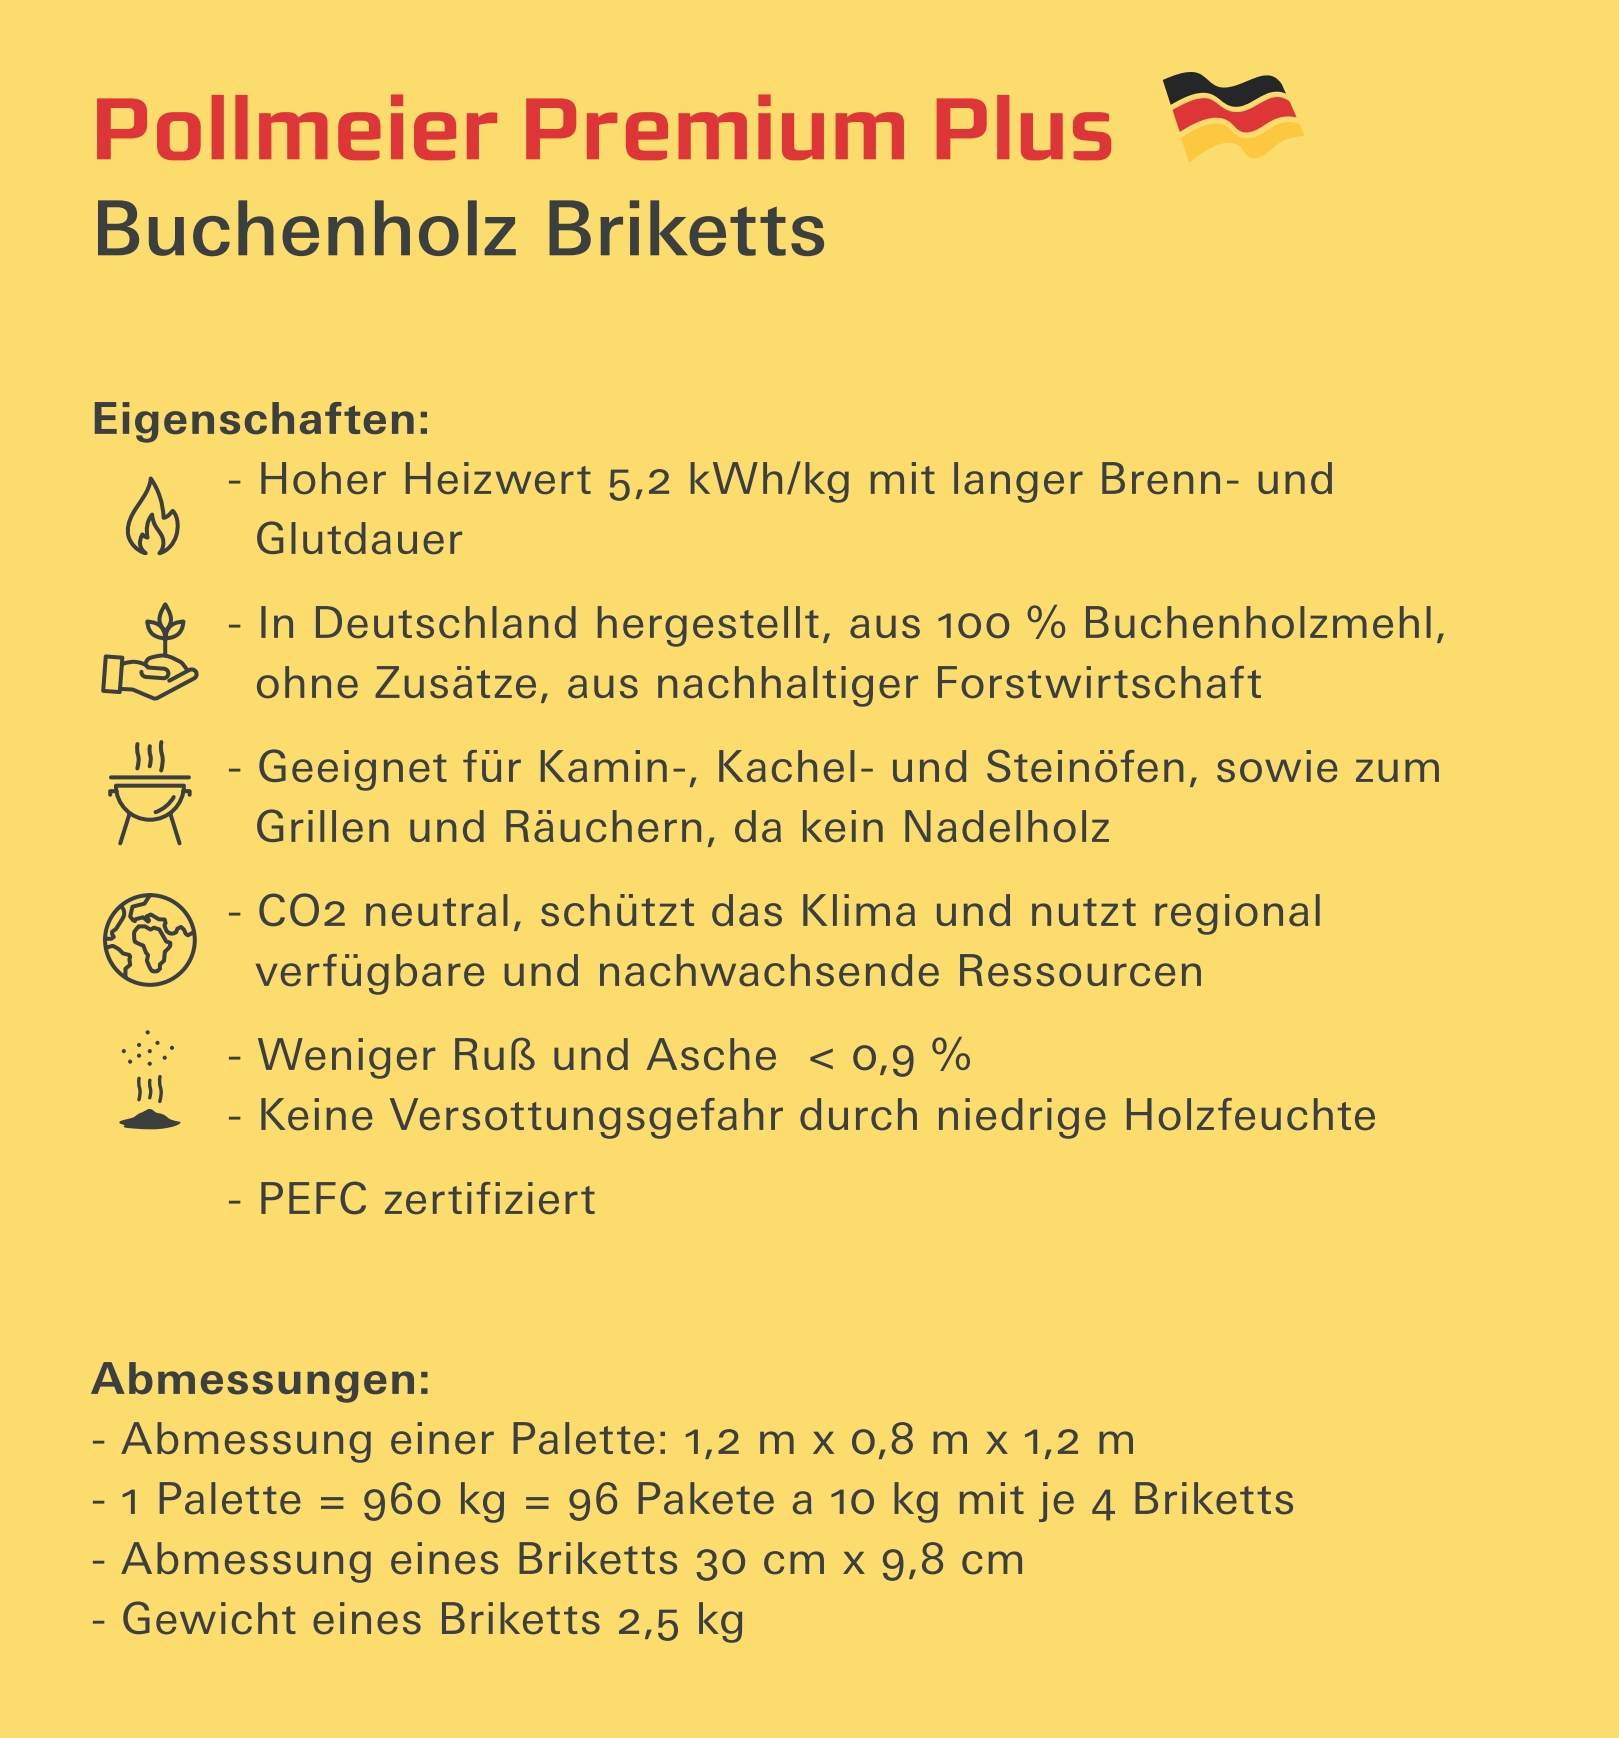 Pollmeier Premium Plus